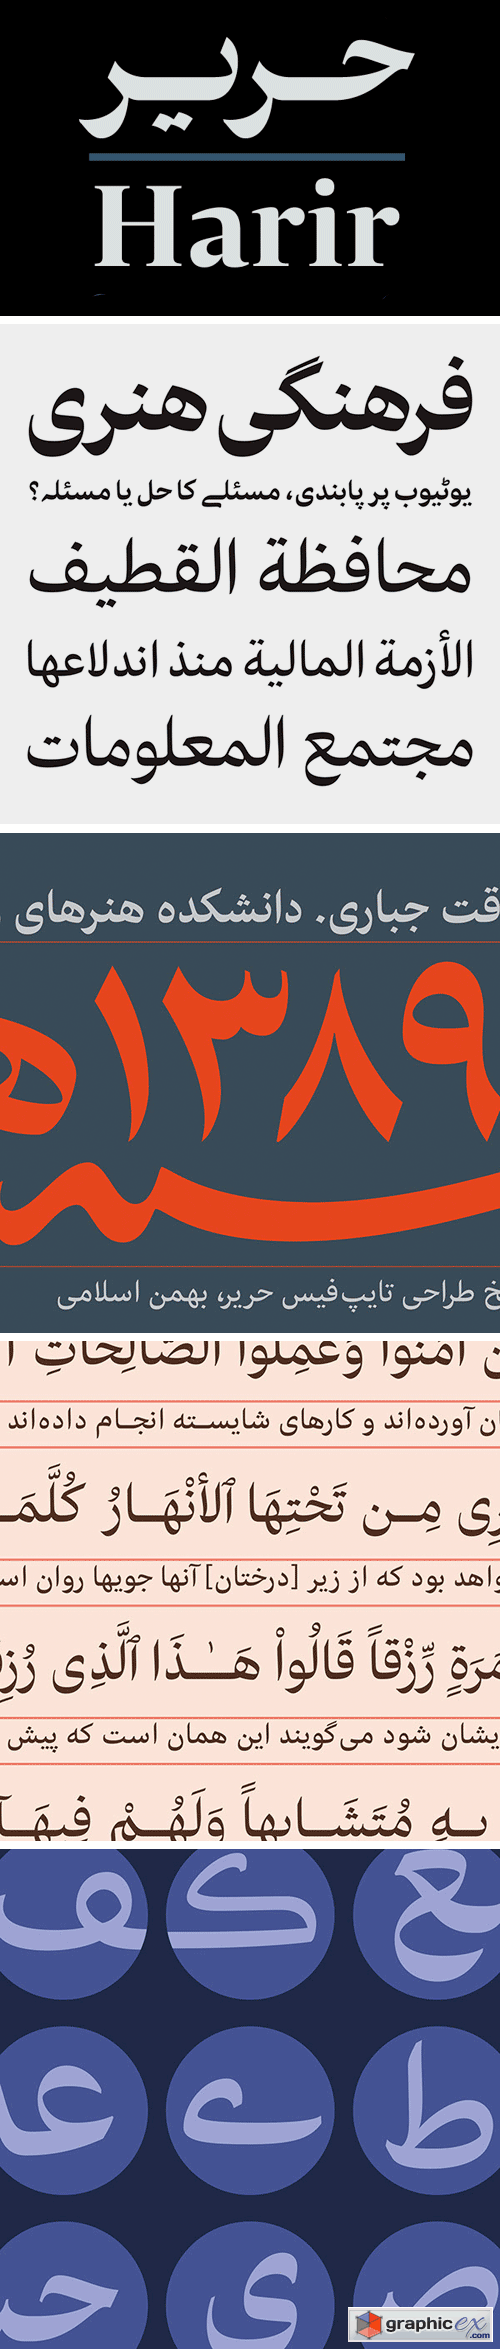 Harir Arabic Typeface